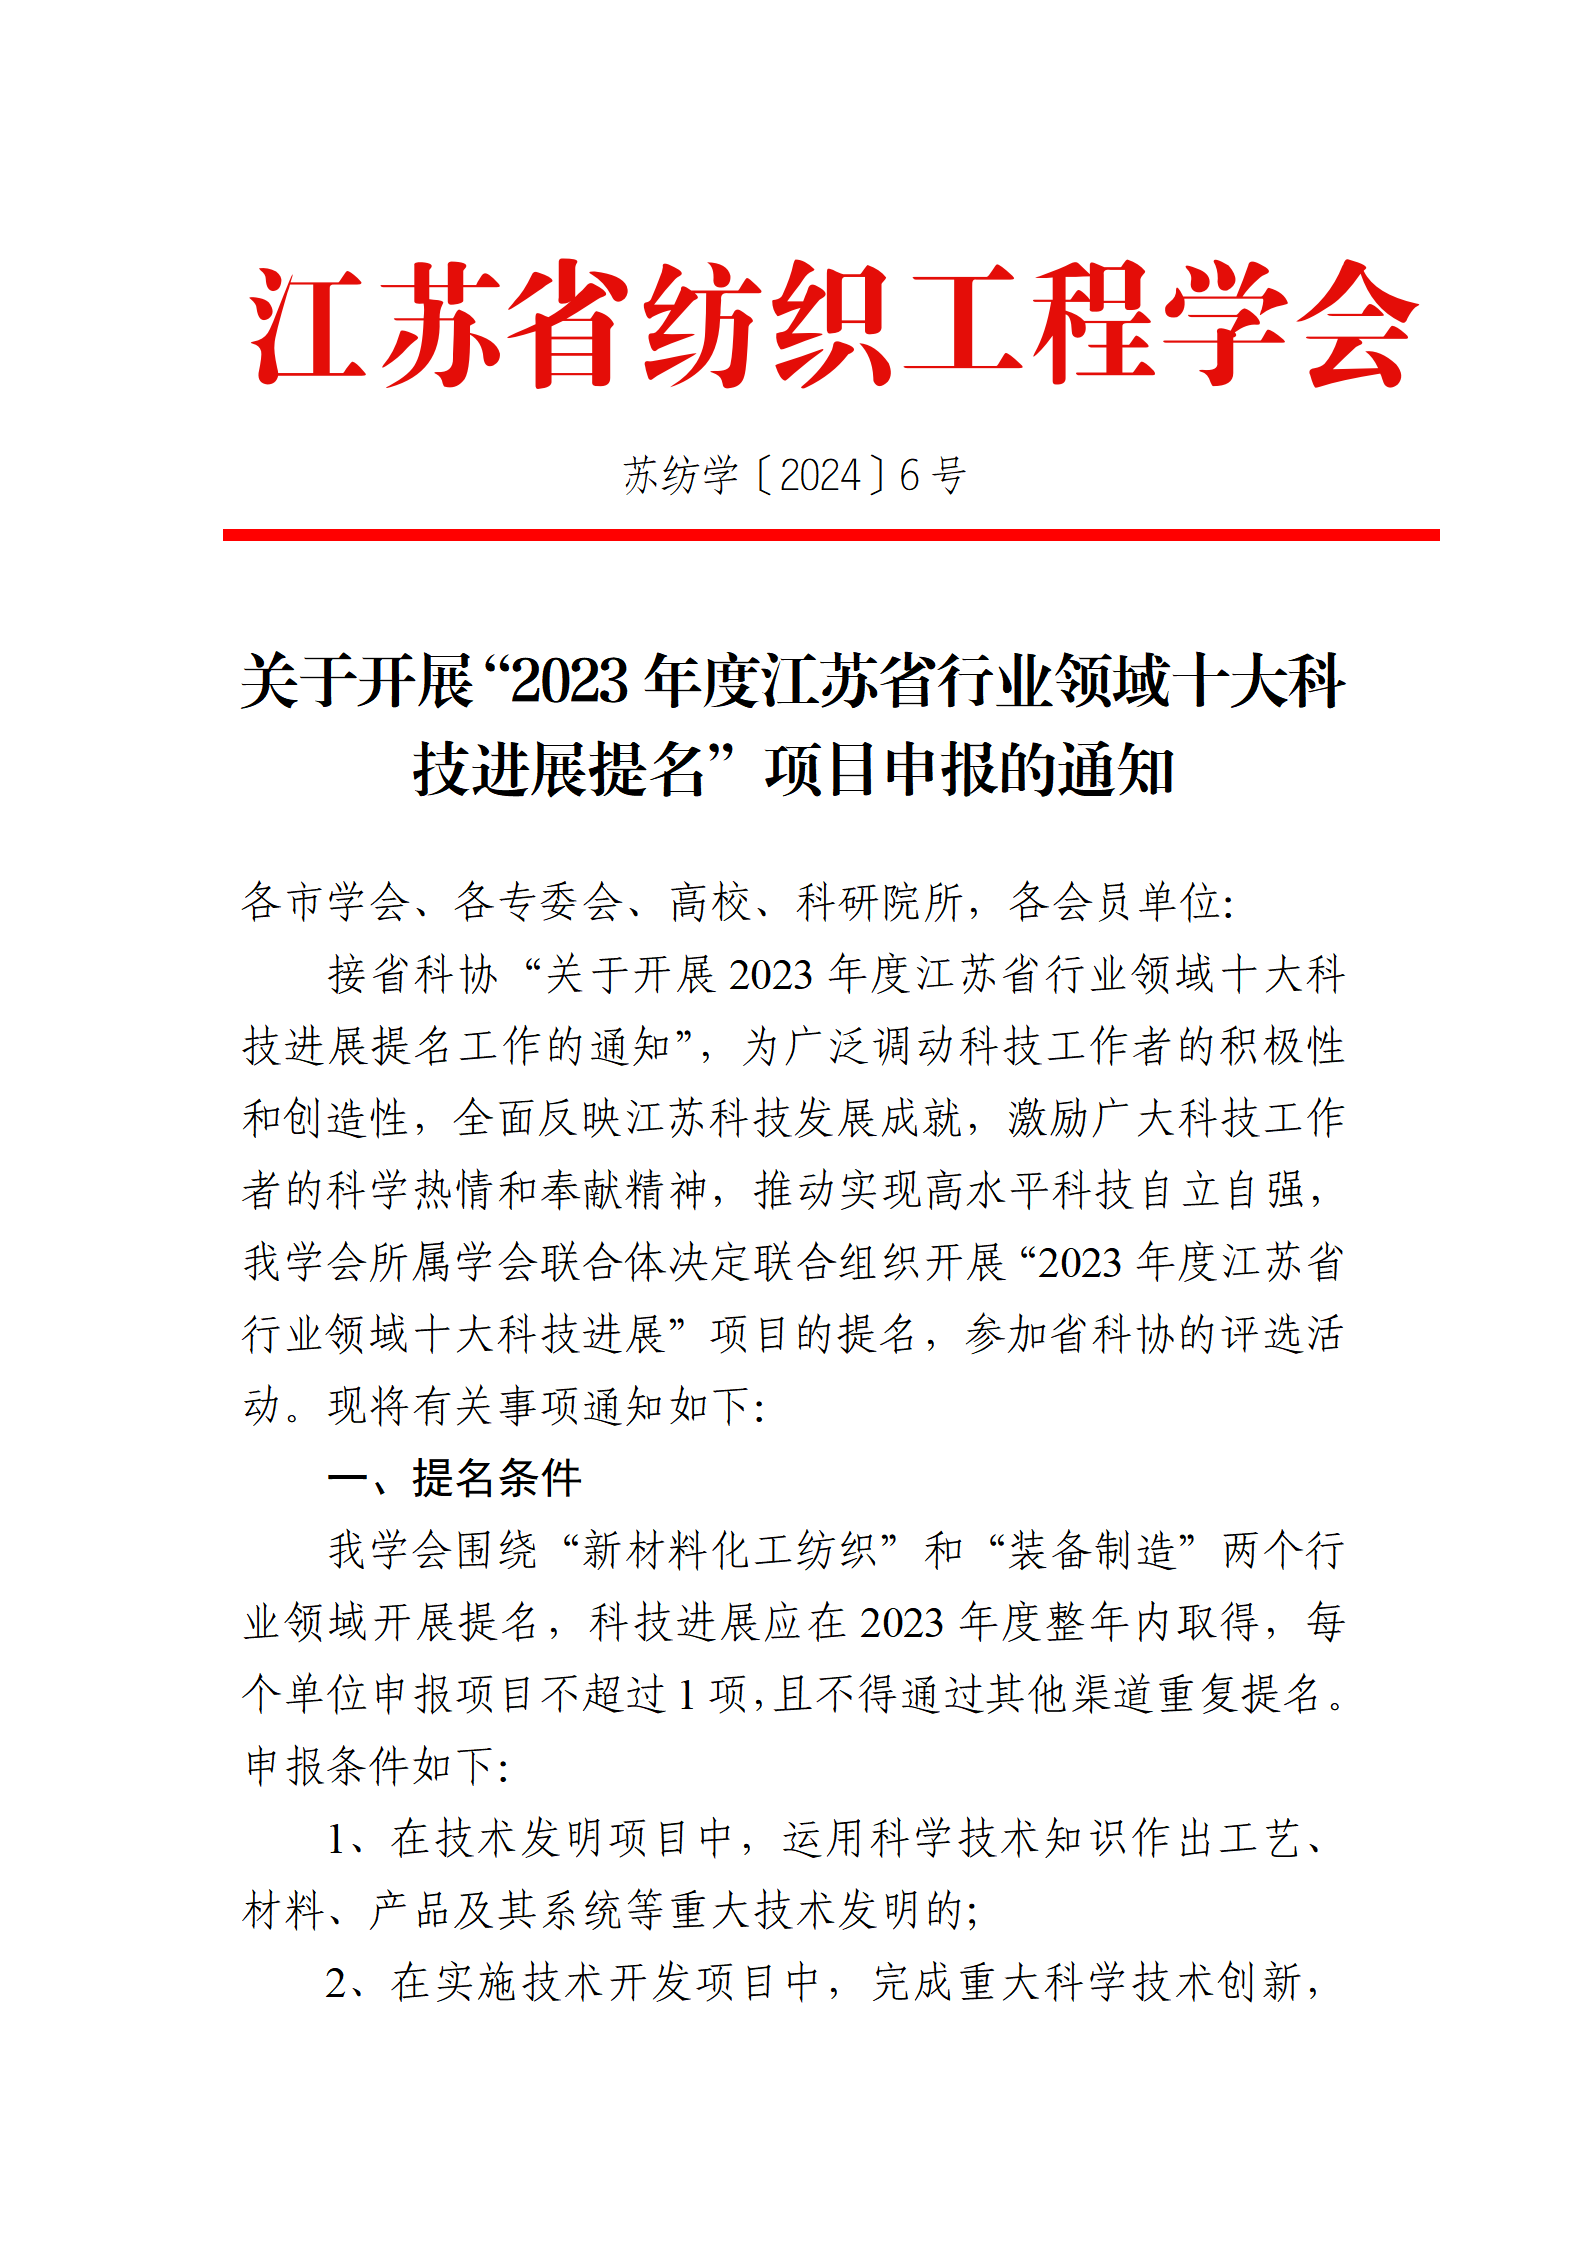 6号文：关于开展“2023年度江苏省行业领域十大科技进展提名”项目申报的通知（带章）_01.png